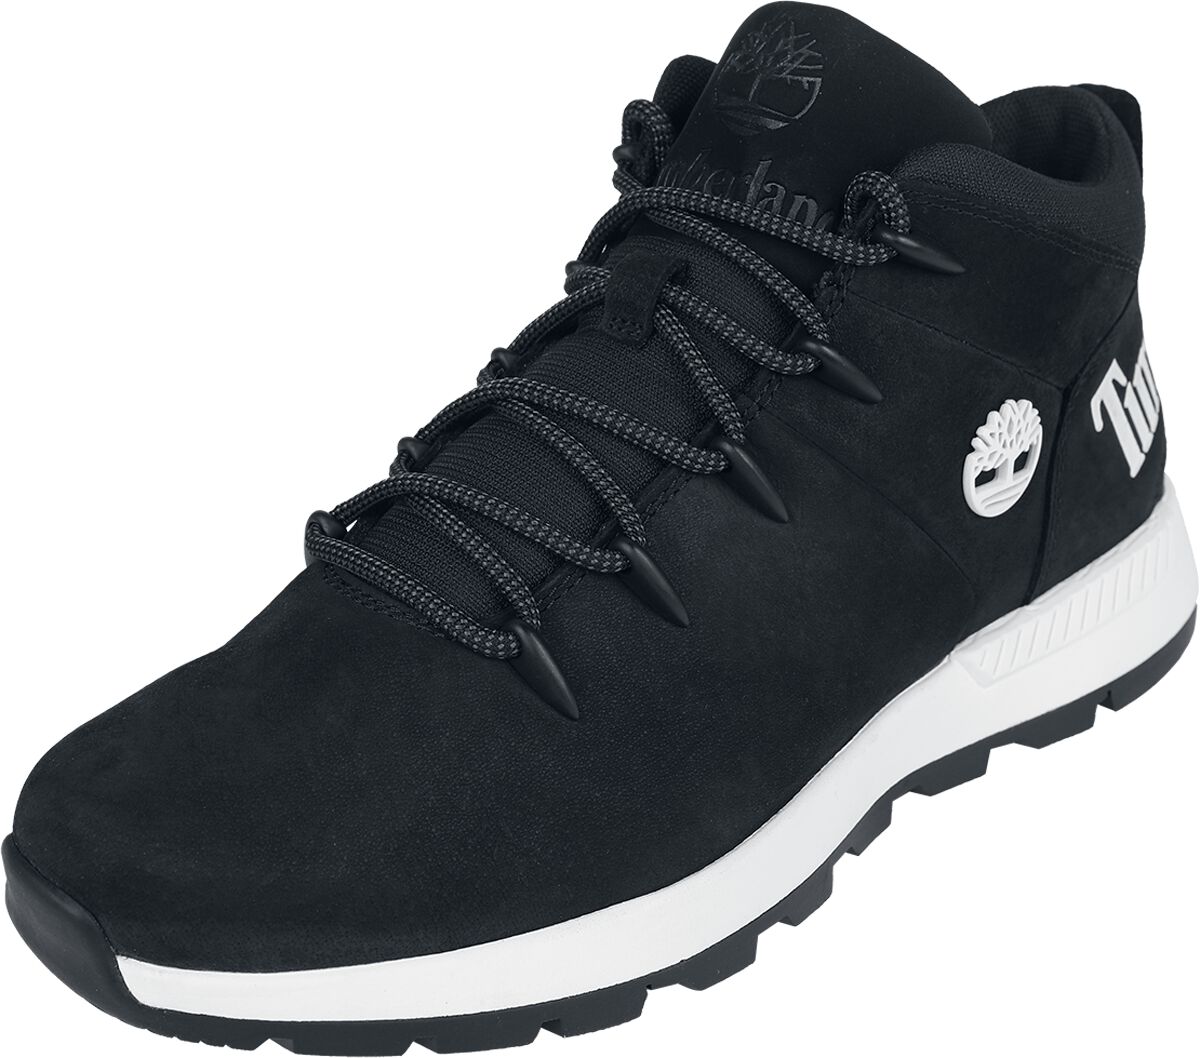 Timberland Sneaker - Sprint Trekker Mid Lace Up - EU41 bis EU46 - für Männer - Größe EU41 - schwarz